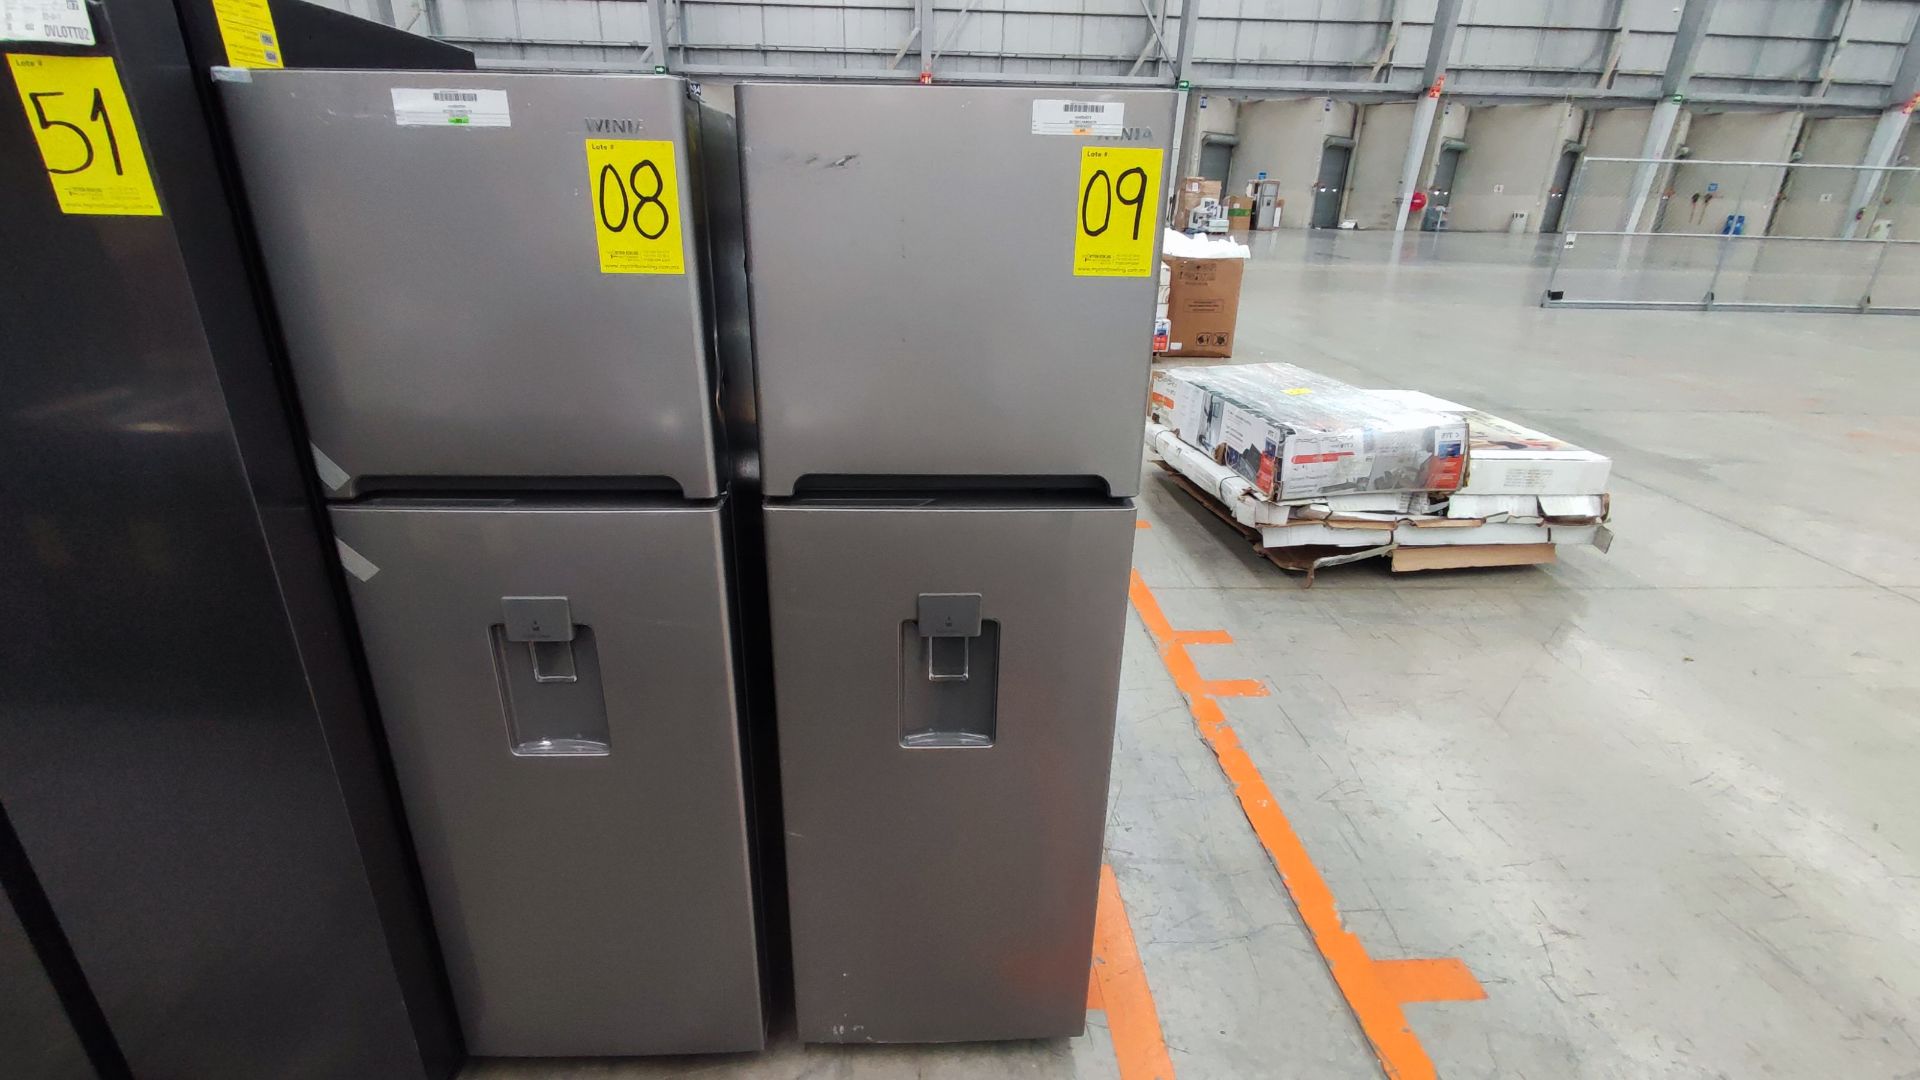 1 Refrigerador Marca Winia, Modelo DFR25210GMDX, Serie MR223N02441007, Color Gris Detalles Estético